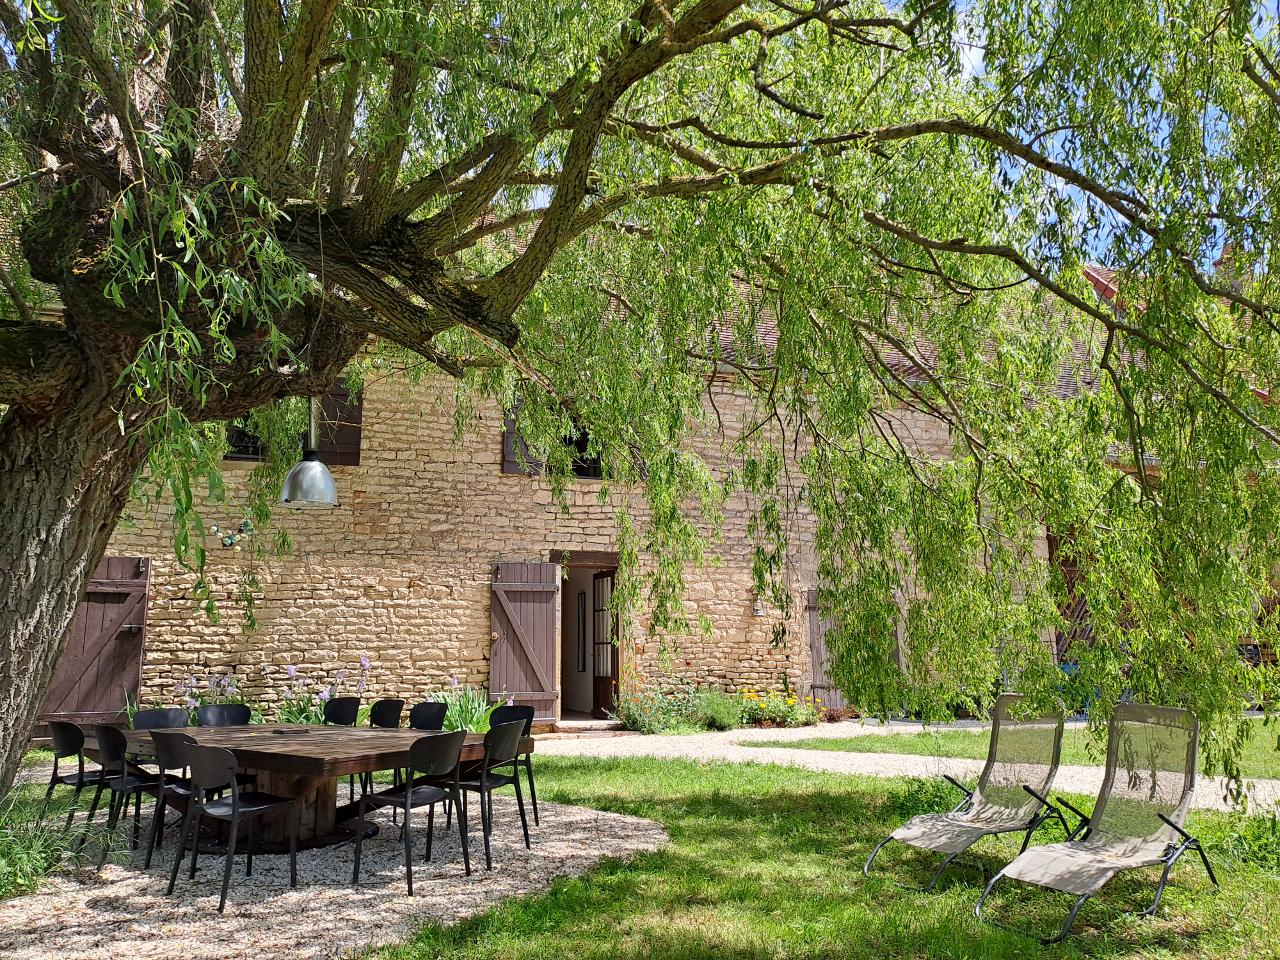 Hôte GreenGo: Gîte de campagne "La Chavoche" situé en lisière de bois et à proximité d’une rivière - Bourgogne - Image 11